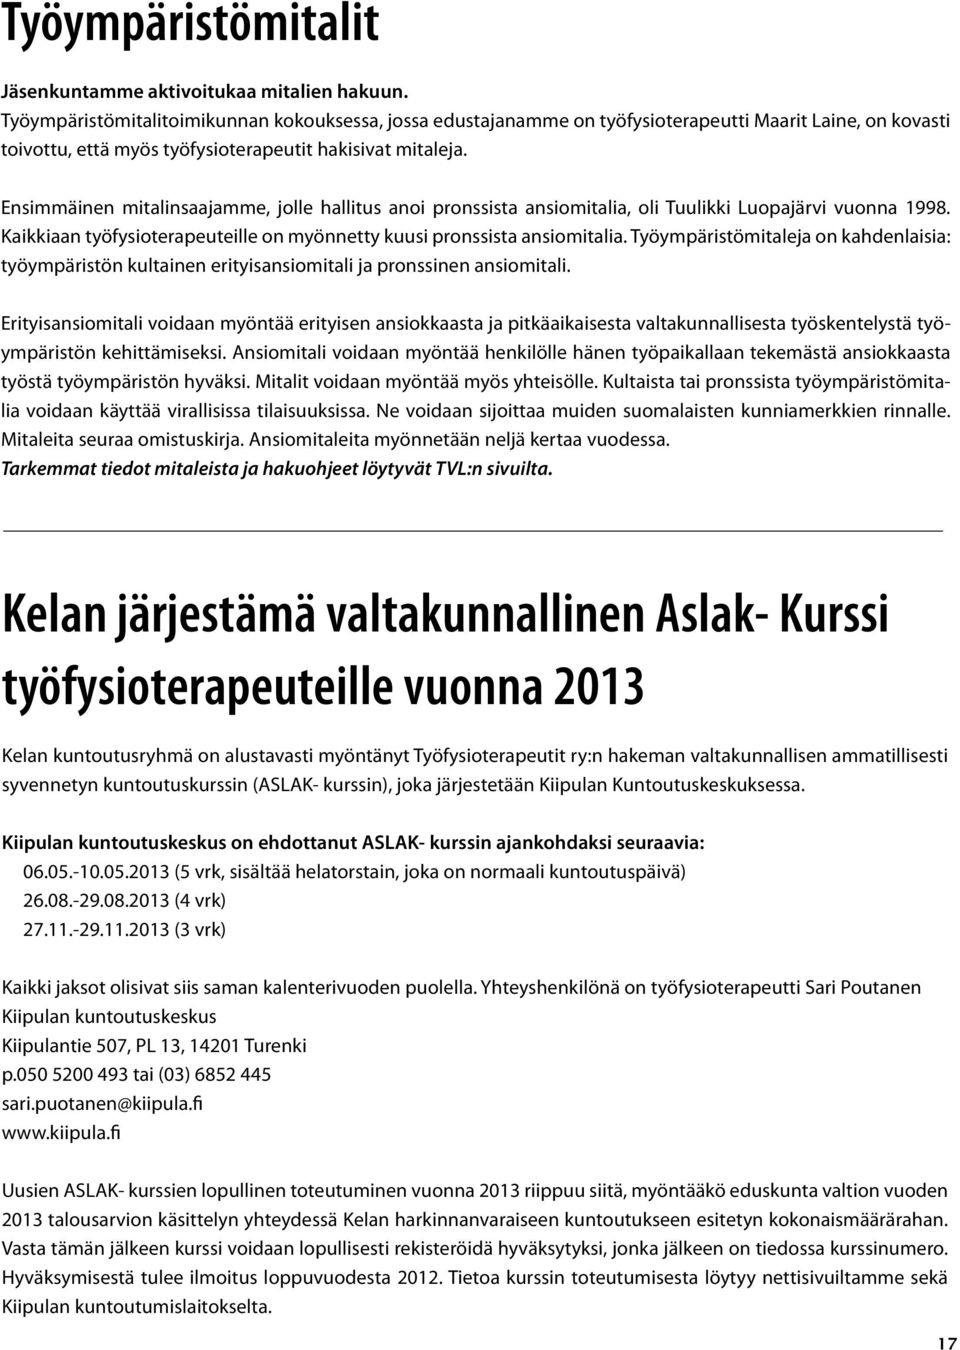 Ensimmäinen mitalinsaajamme, jolle hallitus anoi pronssista ansiomitalia, oli Tuulikki Luopajärvi vuonna 1998. Kaikkiaan työfysioterapeuteille on myönnetty kuusi pronssista ansiomitalia.